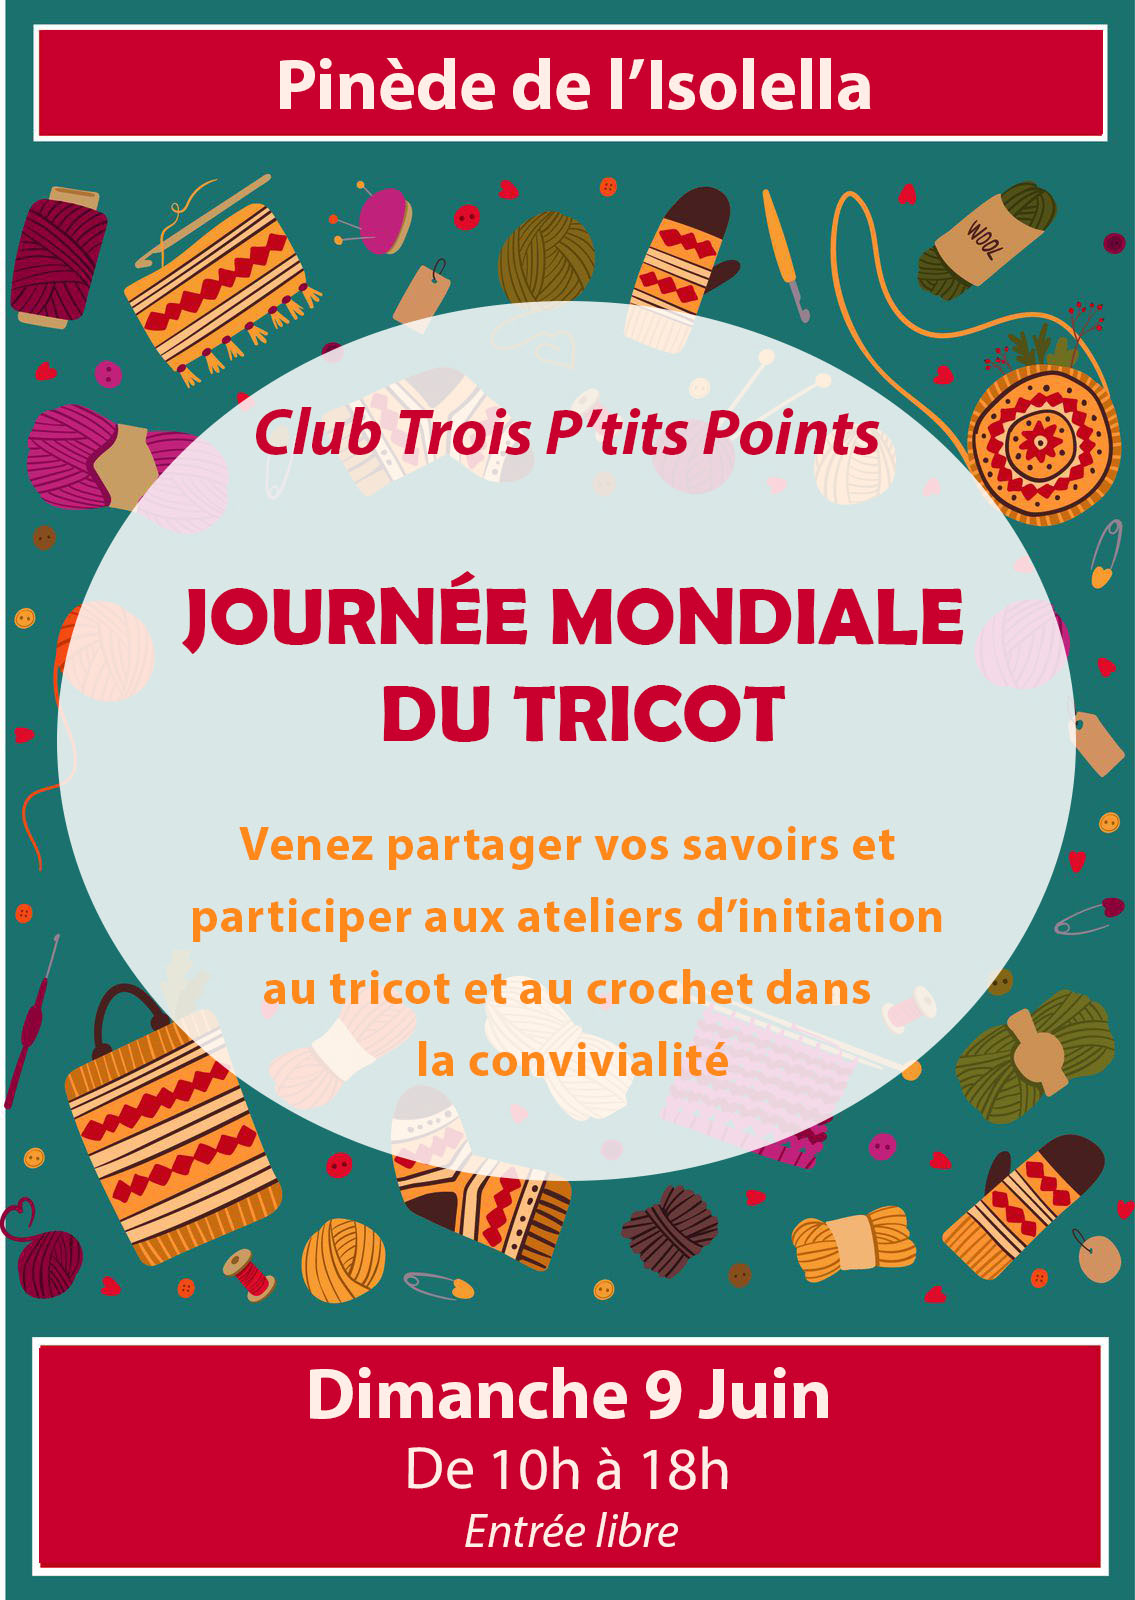 Journée Mondiale du Tricot - Club Trois P'tits Points